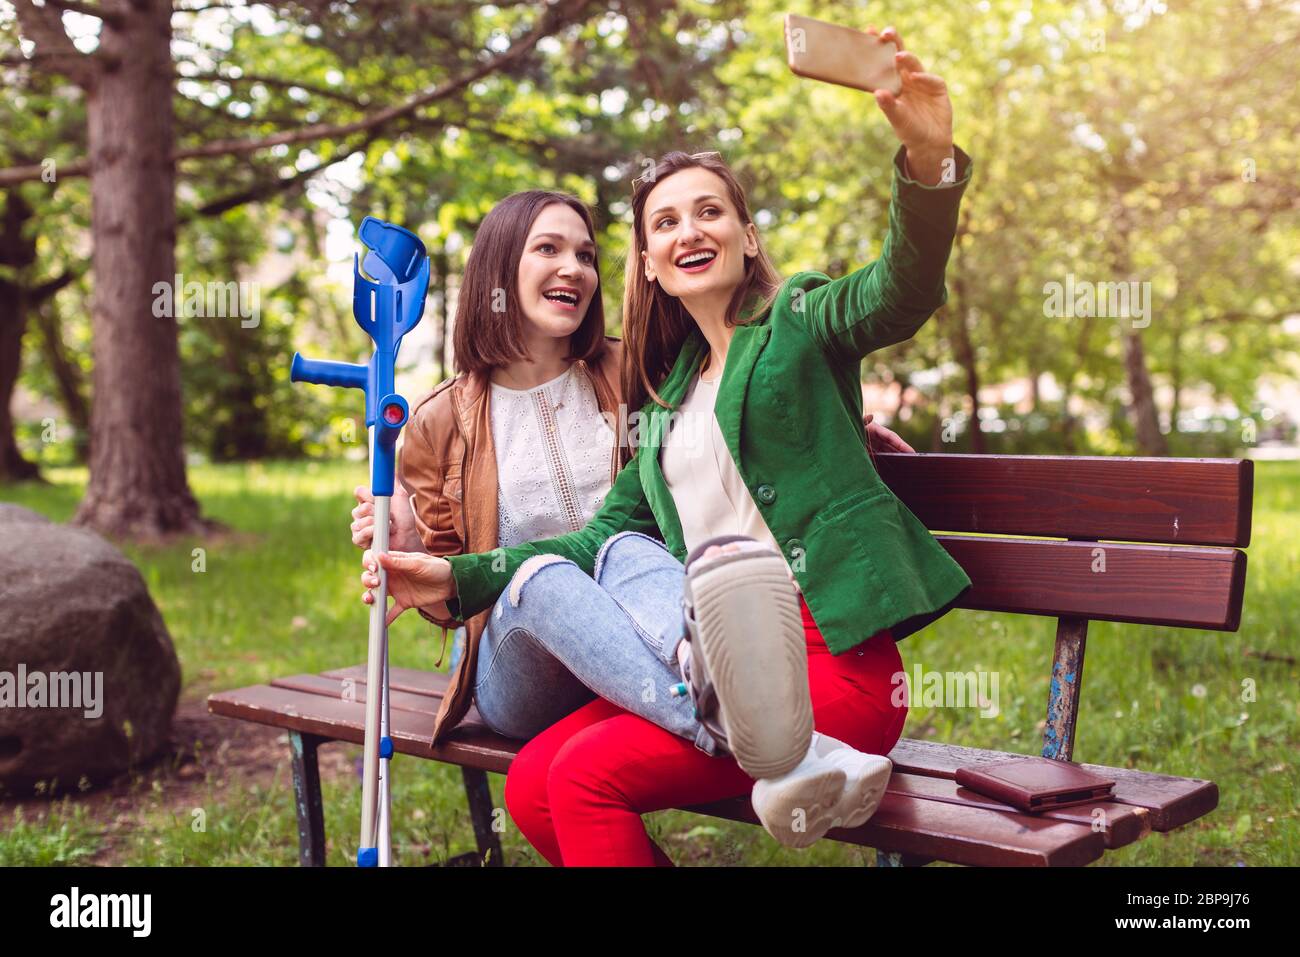 Femme et son ami avec une cheville tentaculaire prenant une photo ou un selfie Banque D'Images